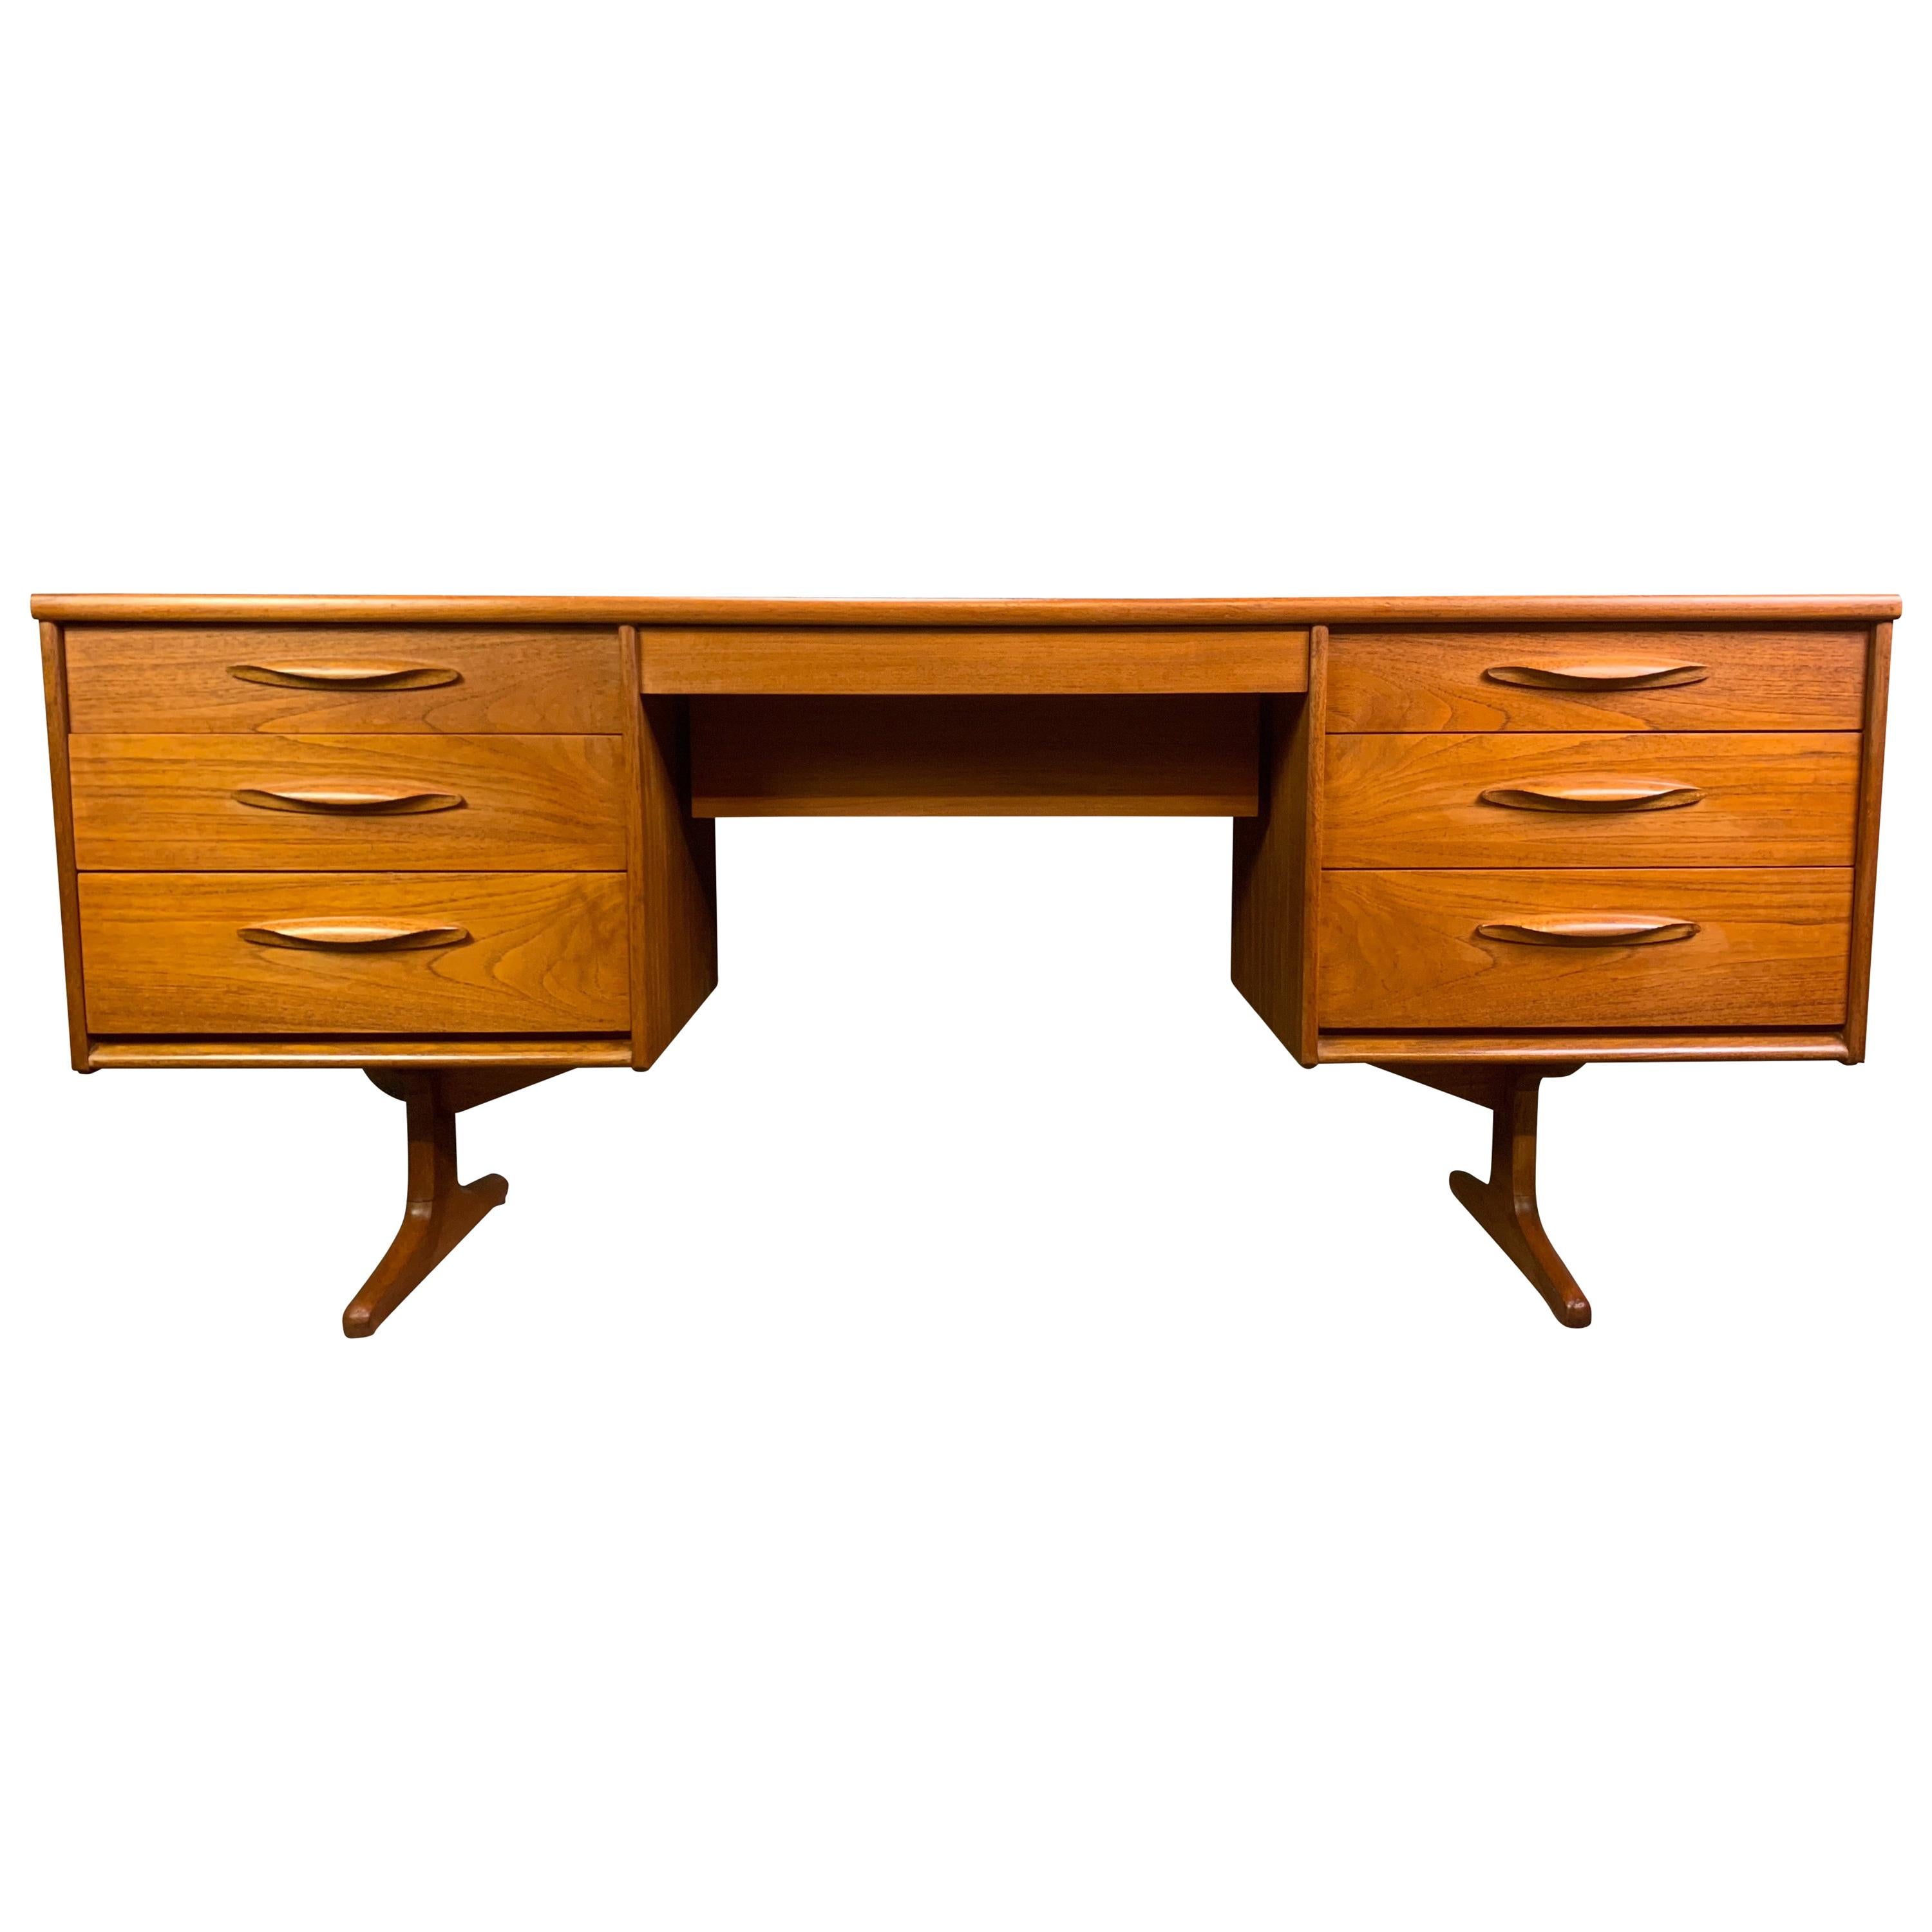 Vintage British Midcentury Teak Desk Worktable by Frank Guille for Austinsuite For Sale